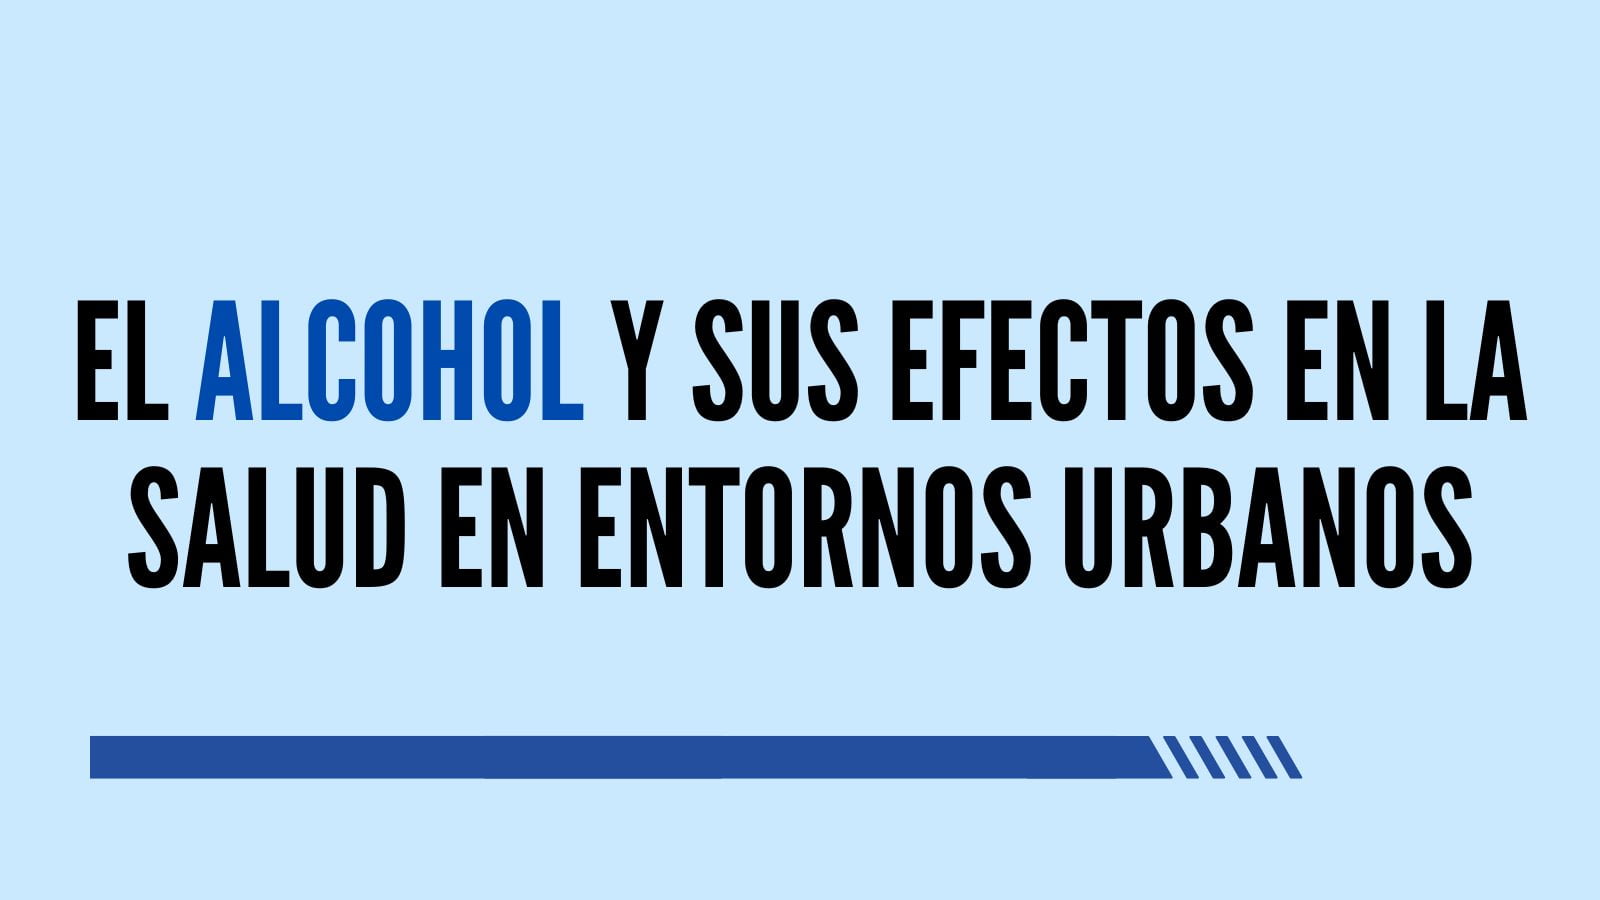 El alcohol y sus efectos en la salud en entornos urbanos